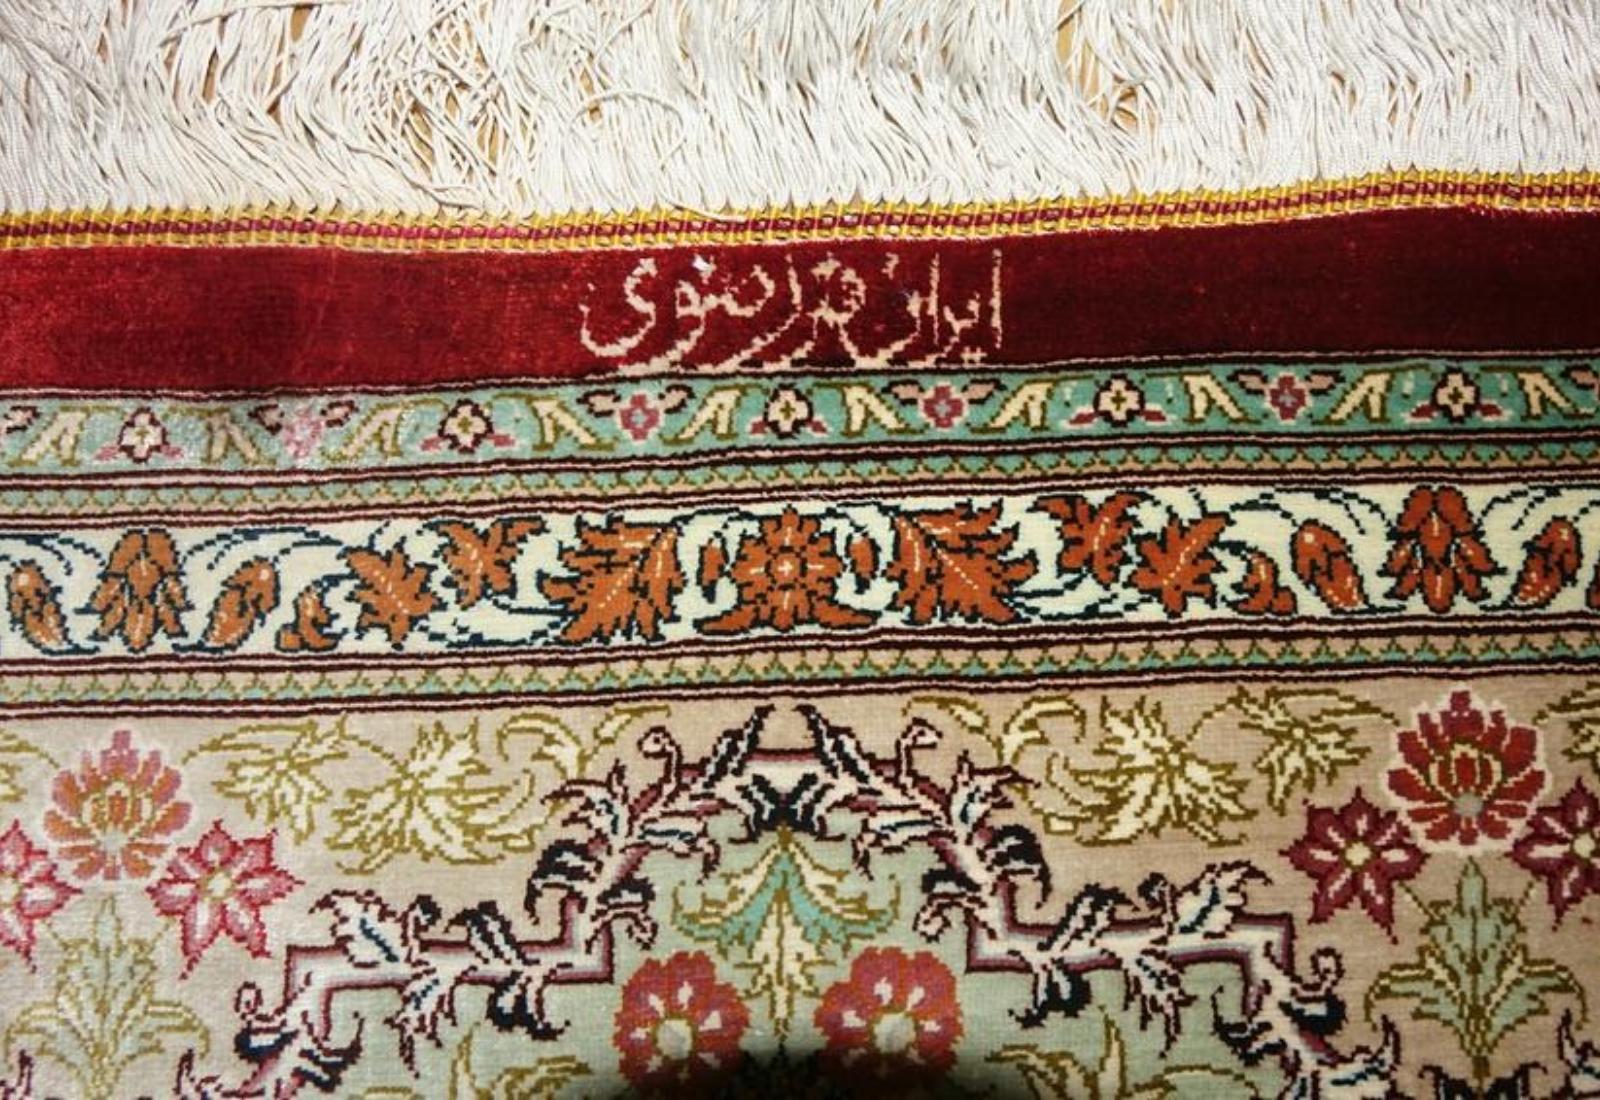 Contemporary Very fine Persian Silk Qum - 6.8' 4.5' For Sale